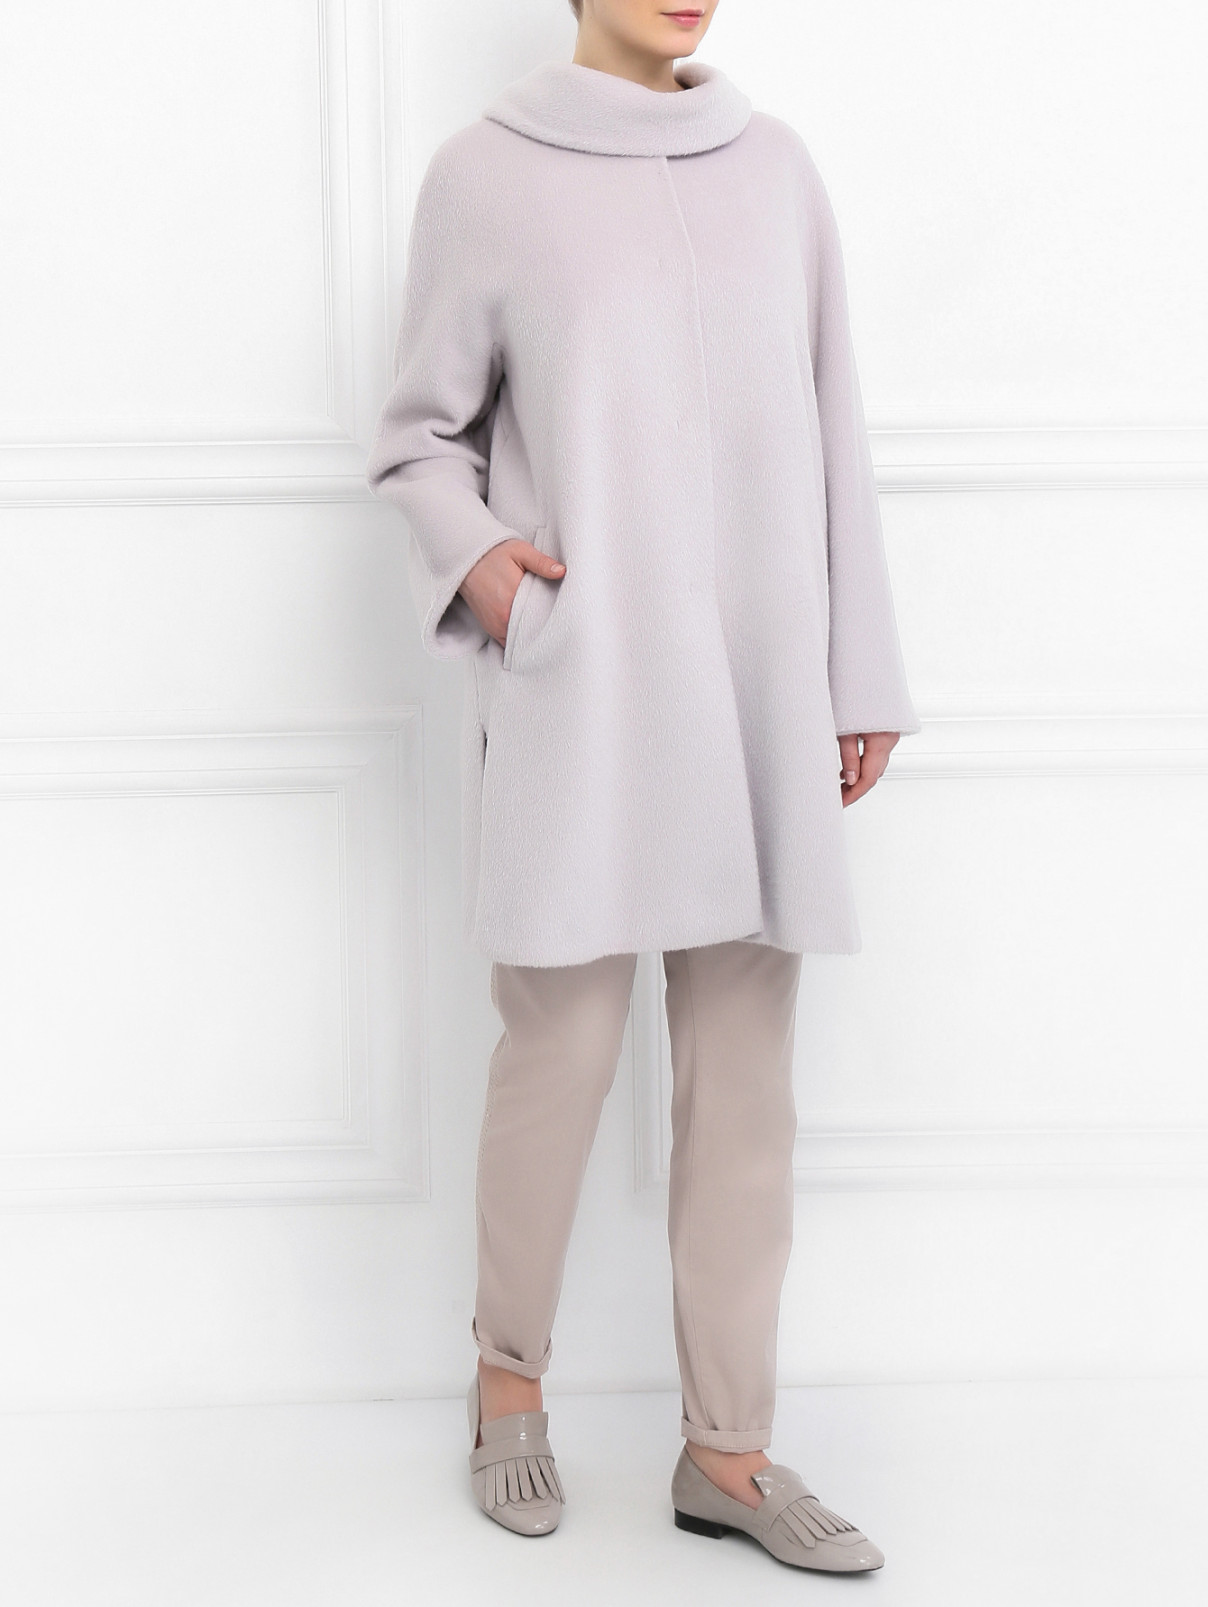 Пальто из шерсти Marina Rinaldi  –  Модель Общий вид  – Цвет:  Серый